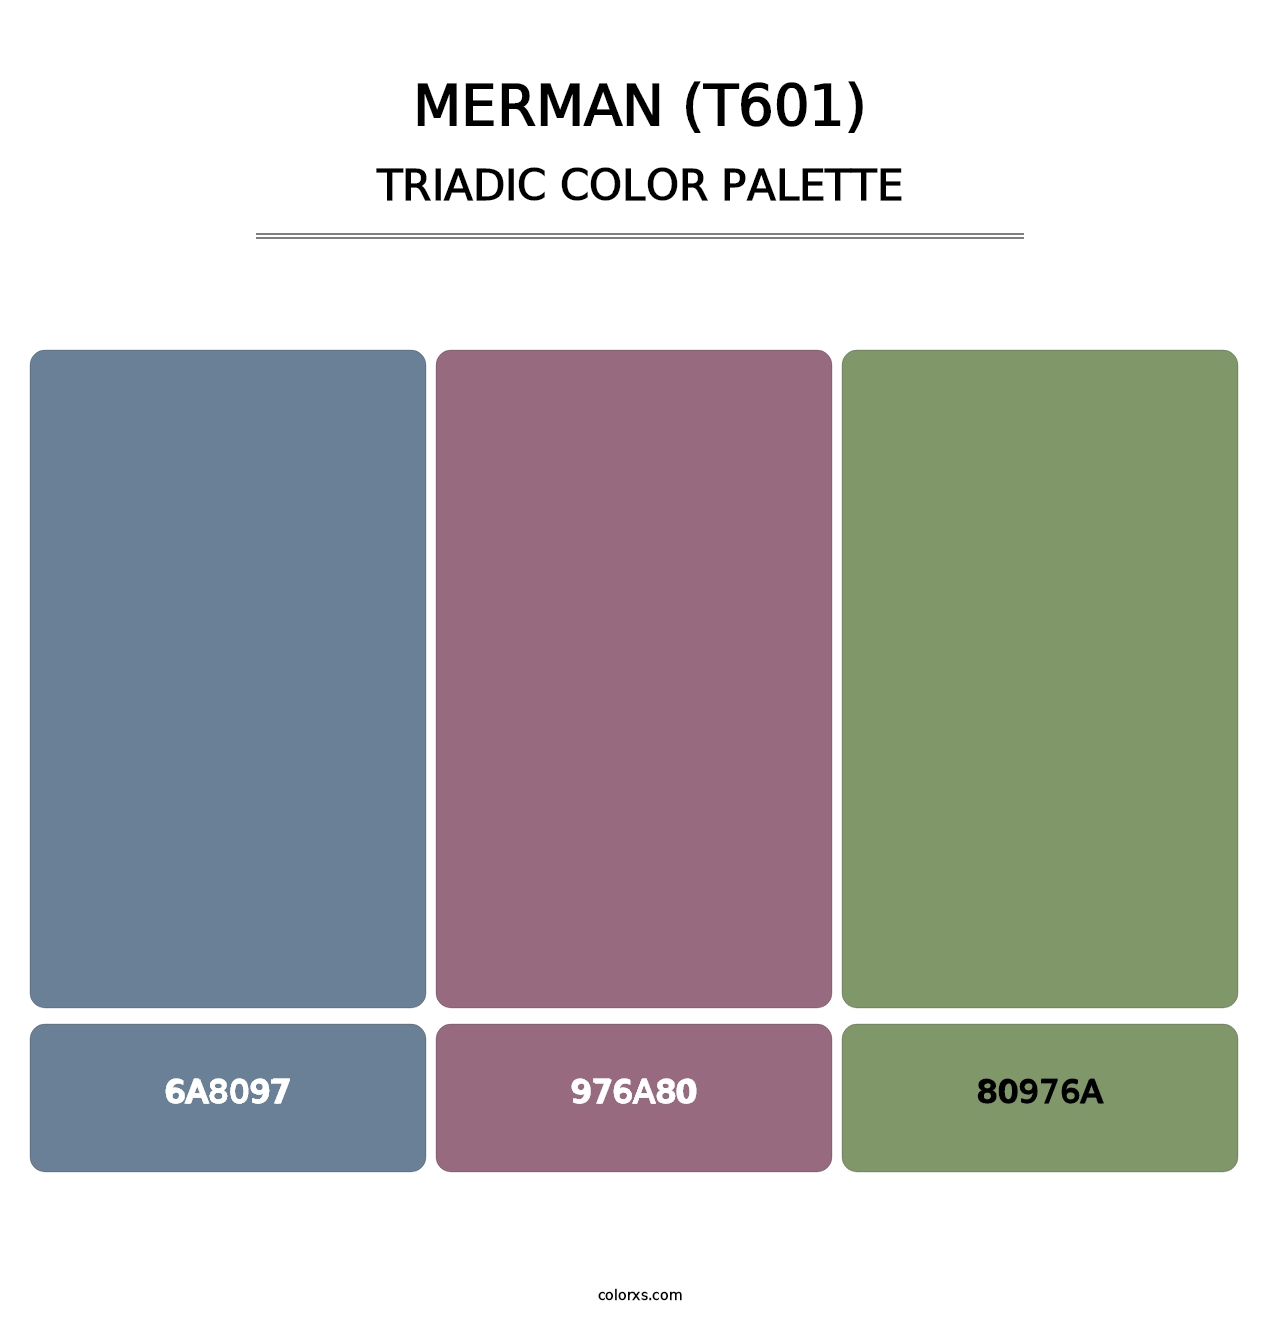 Merman (T601) - Triadic Color Palette